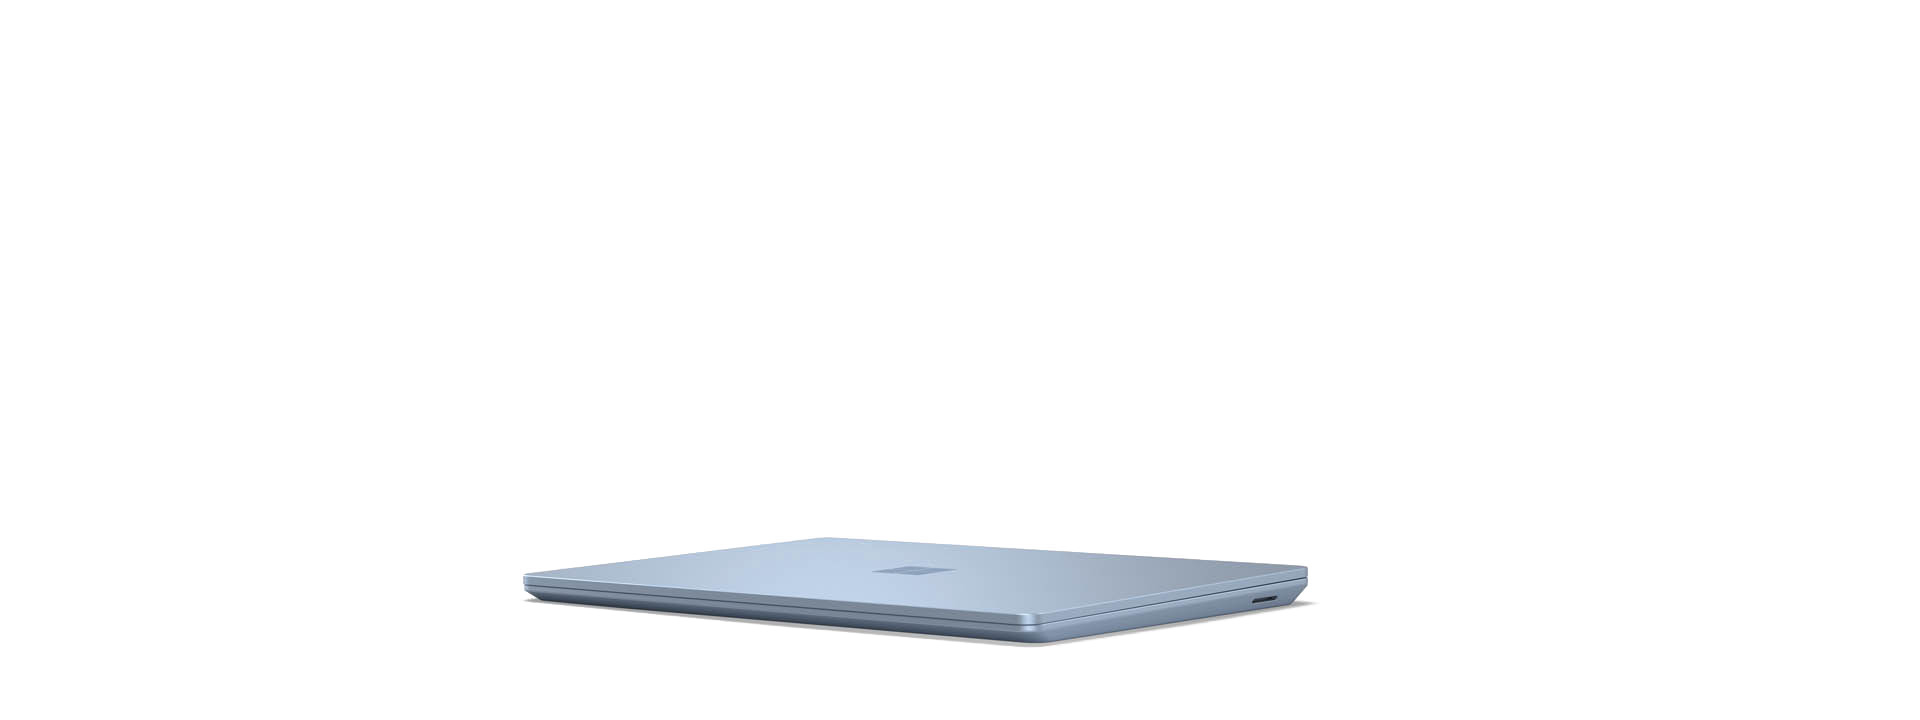 Un Surface Laptop Go est présenté en position fermée.